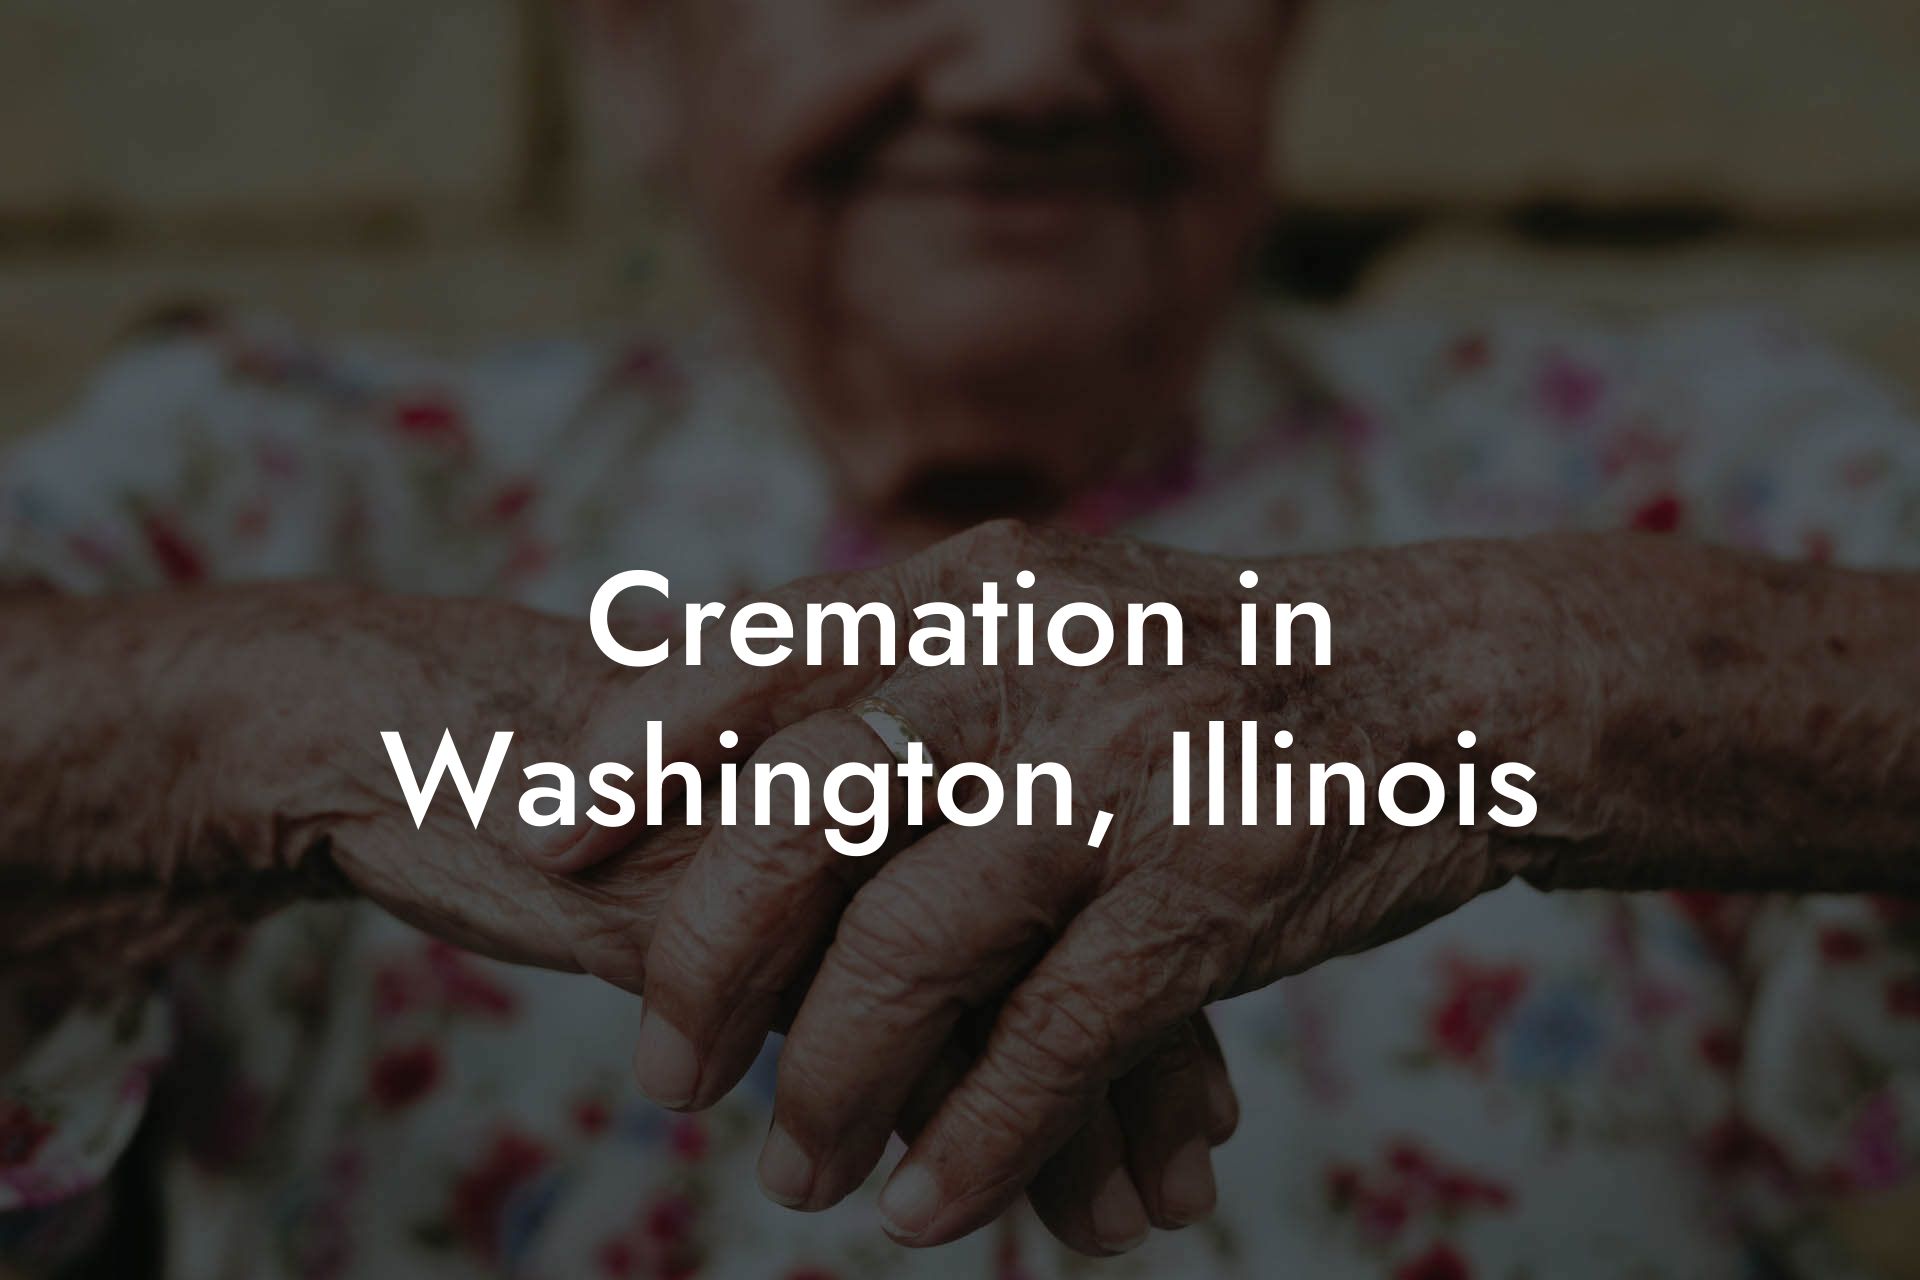 Cremation in Washington, Illinois